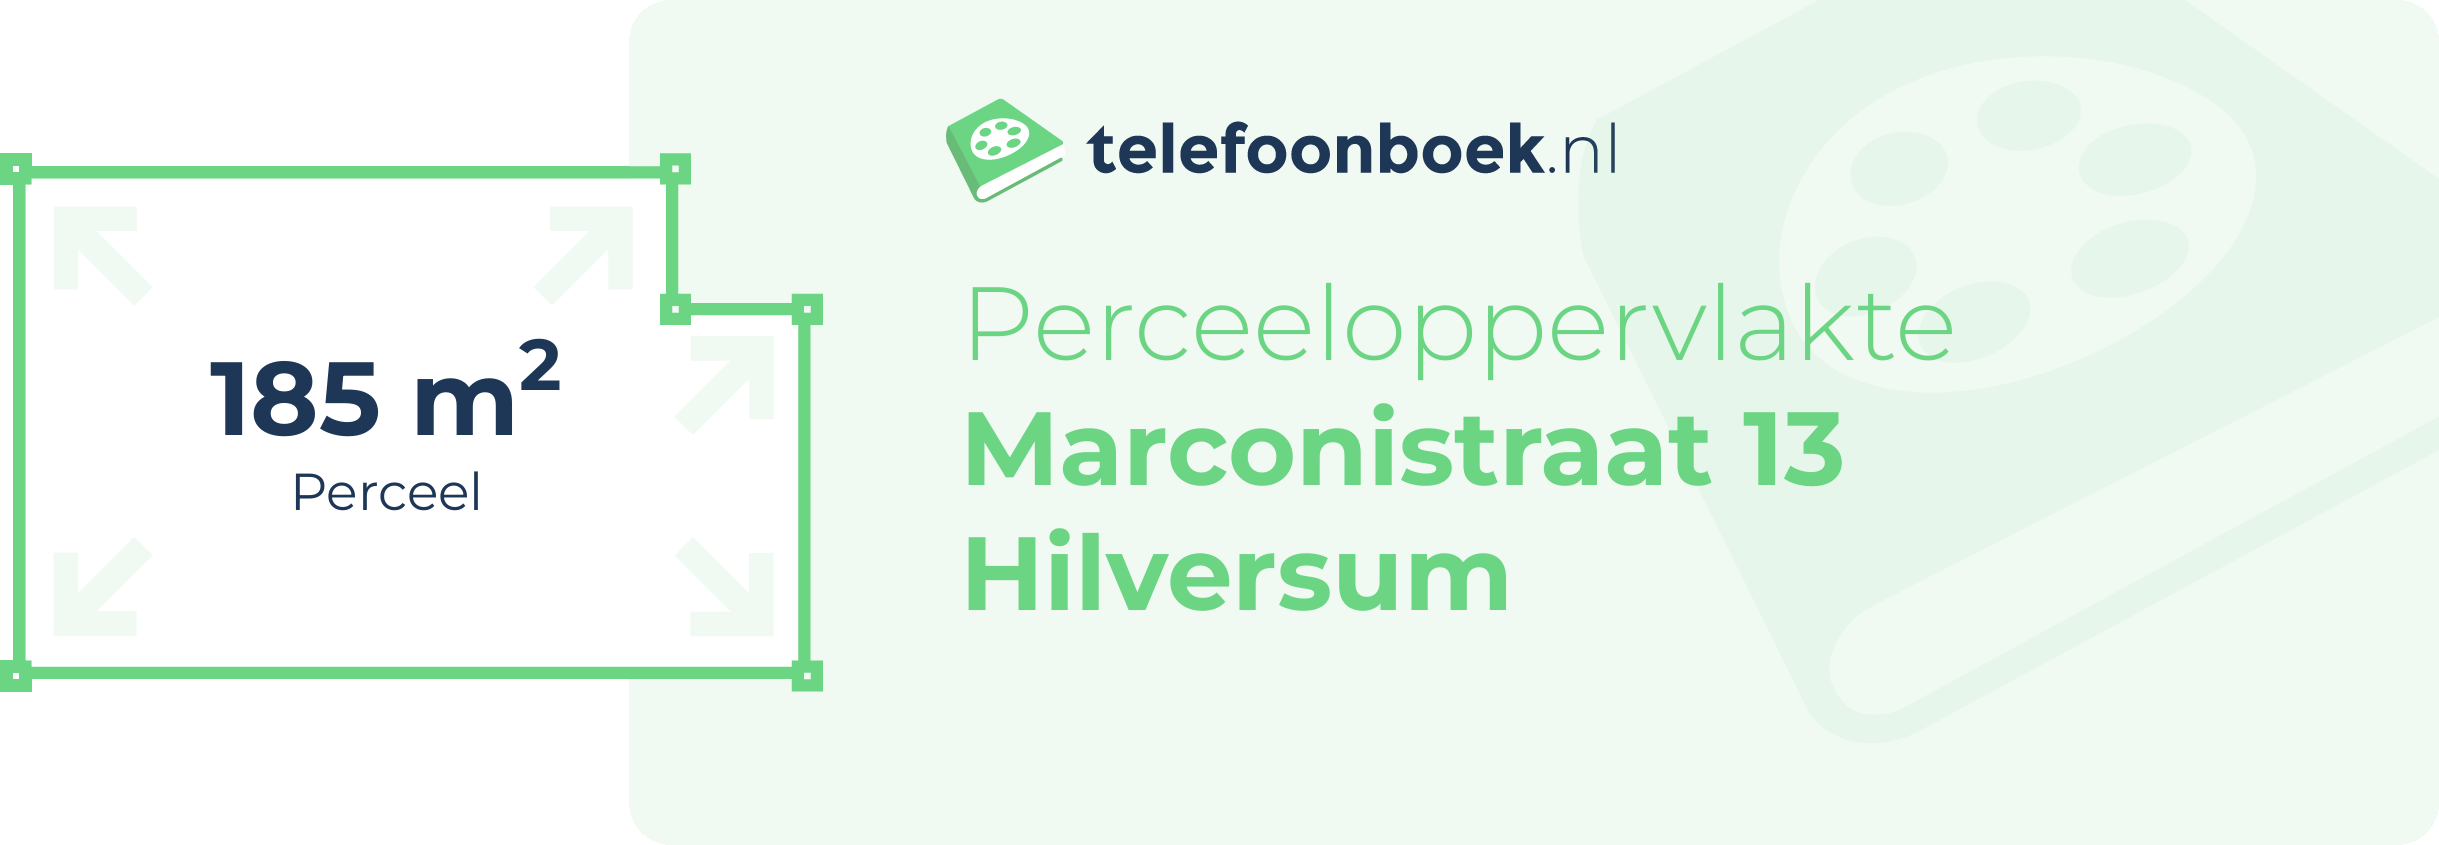 Perceeloppervlakte Marconistraat 13 Hilversum